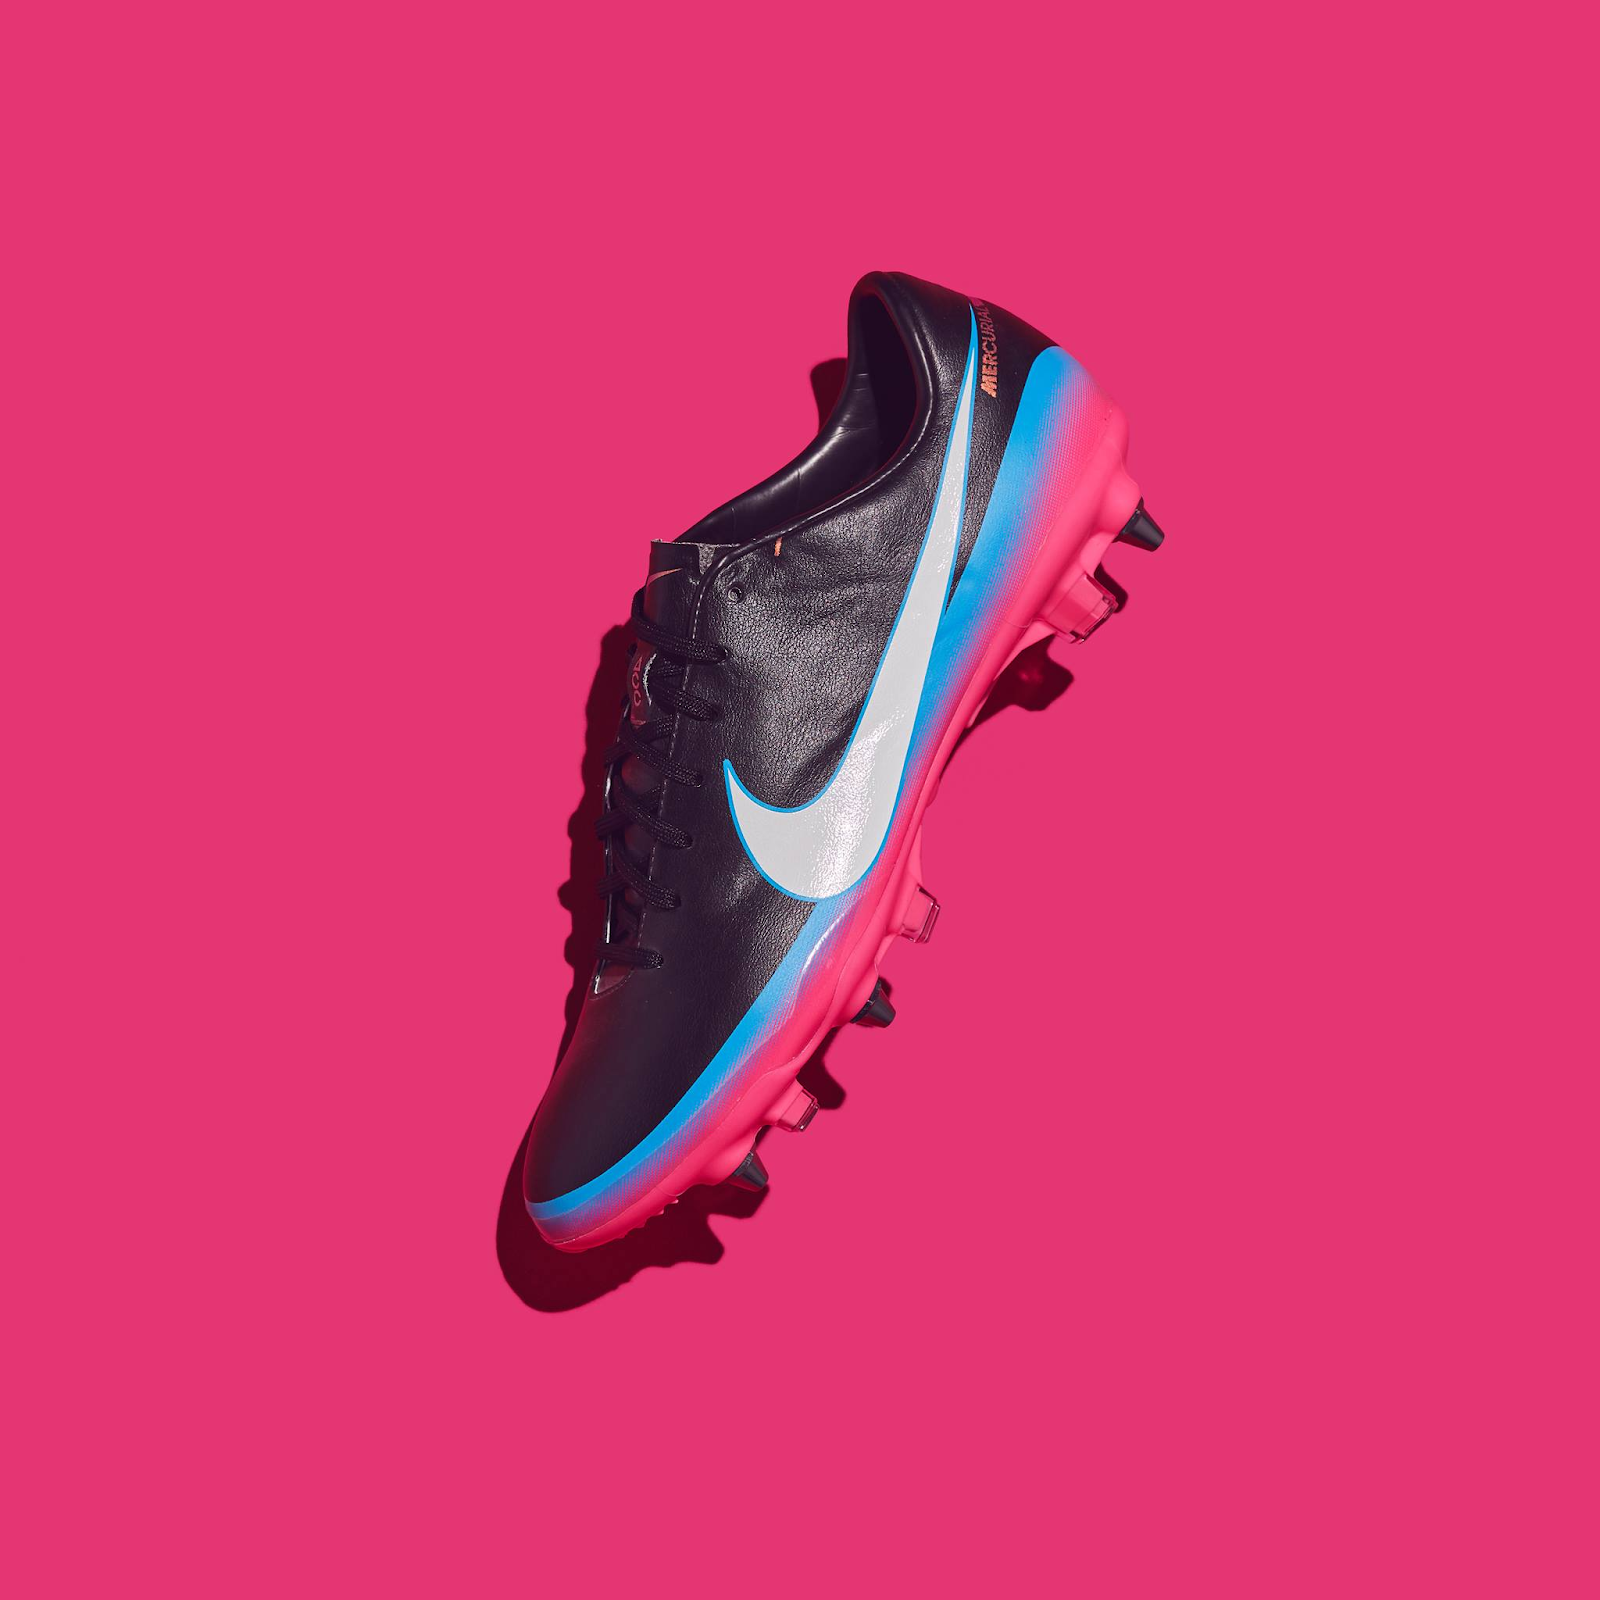 4. Giày đá banh Nike Mercurial Vapor VIII CR – Tháng 11 năm 2012